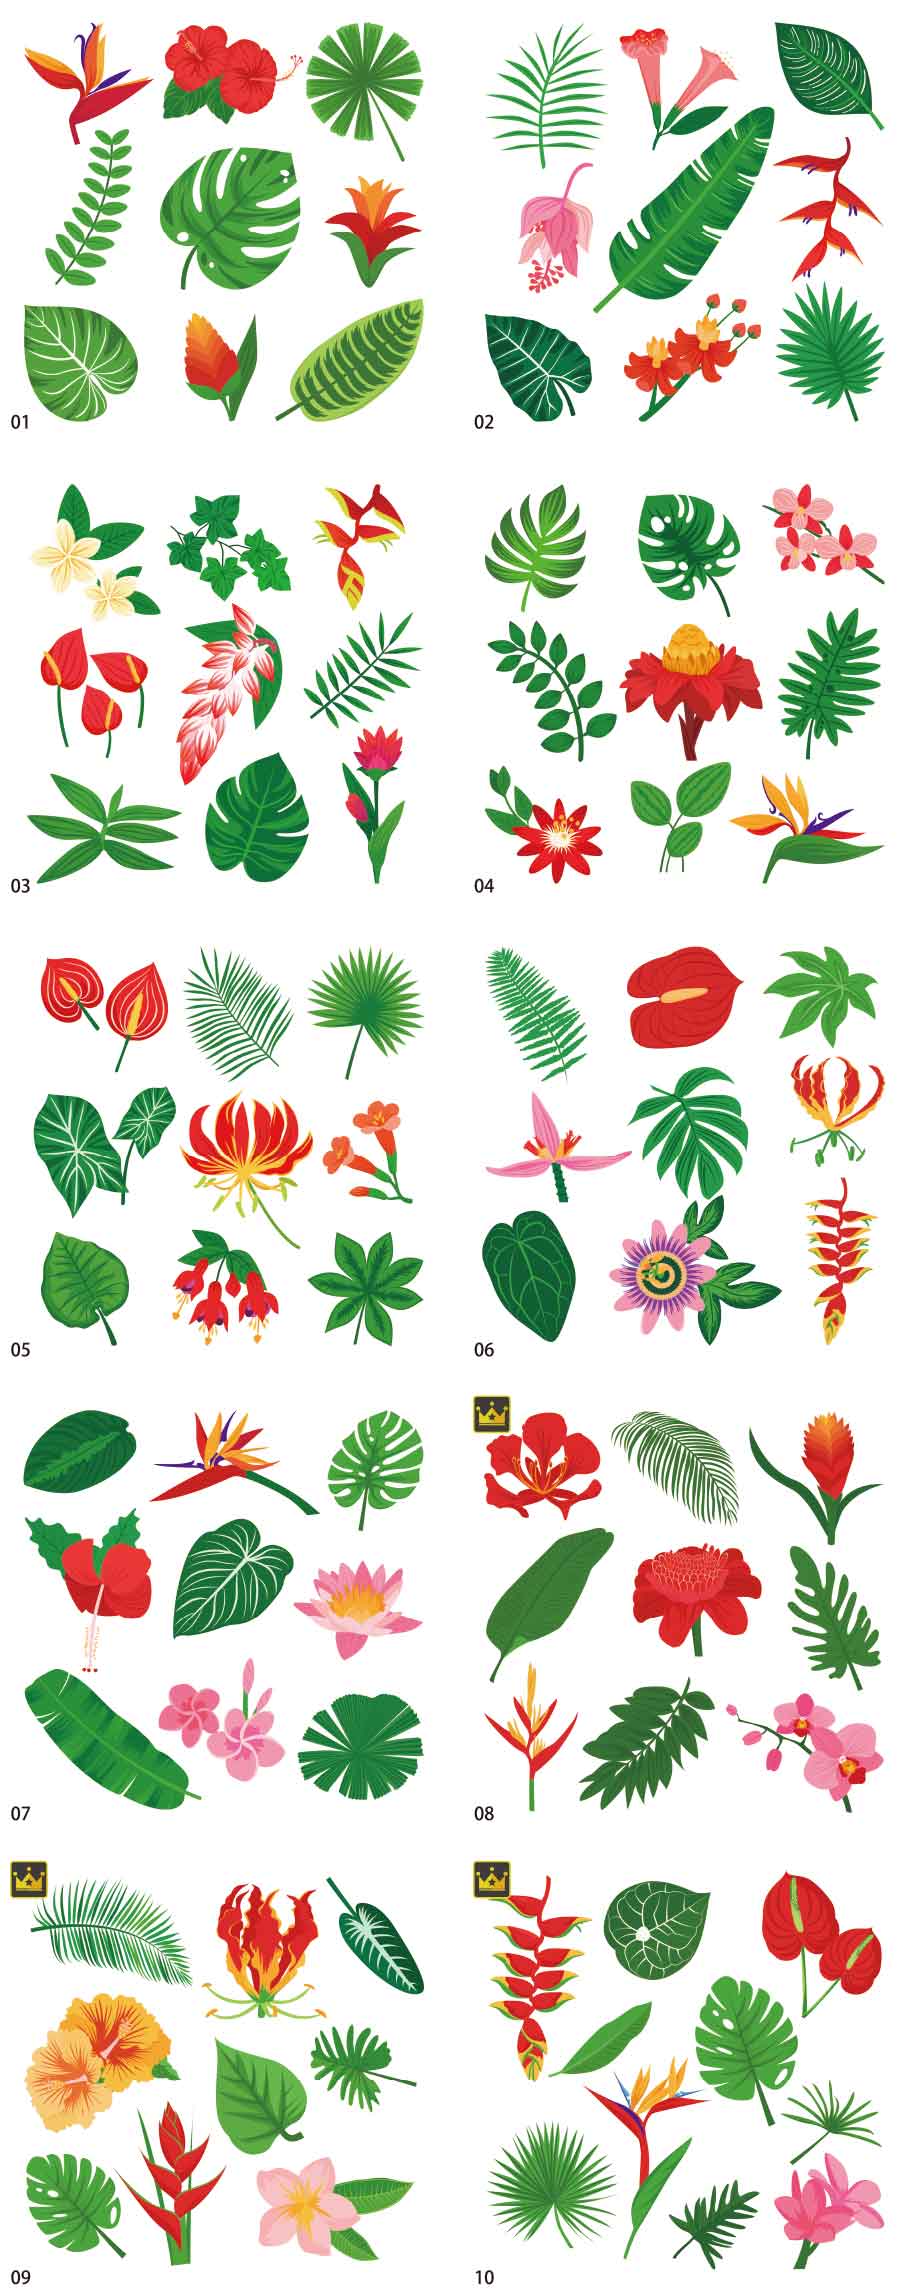 Bộ sưu tập minh họa thực vật nhiệt đới